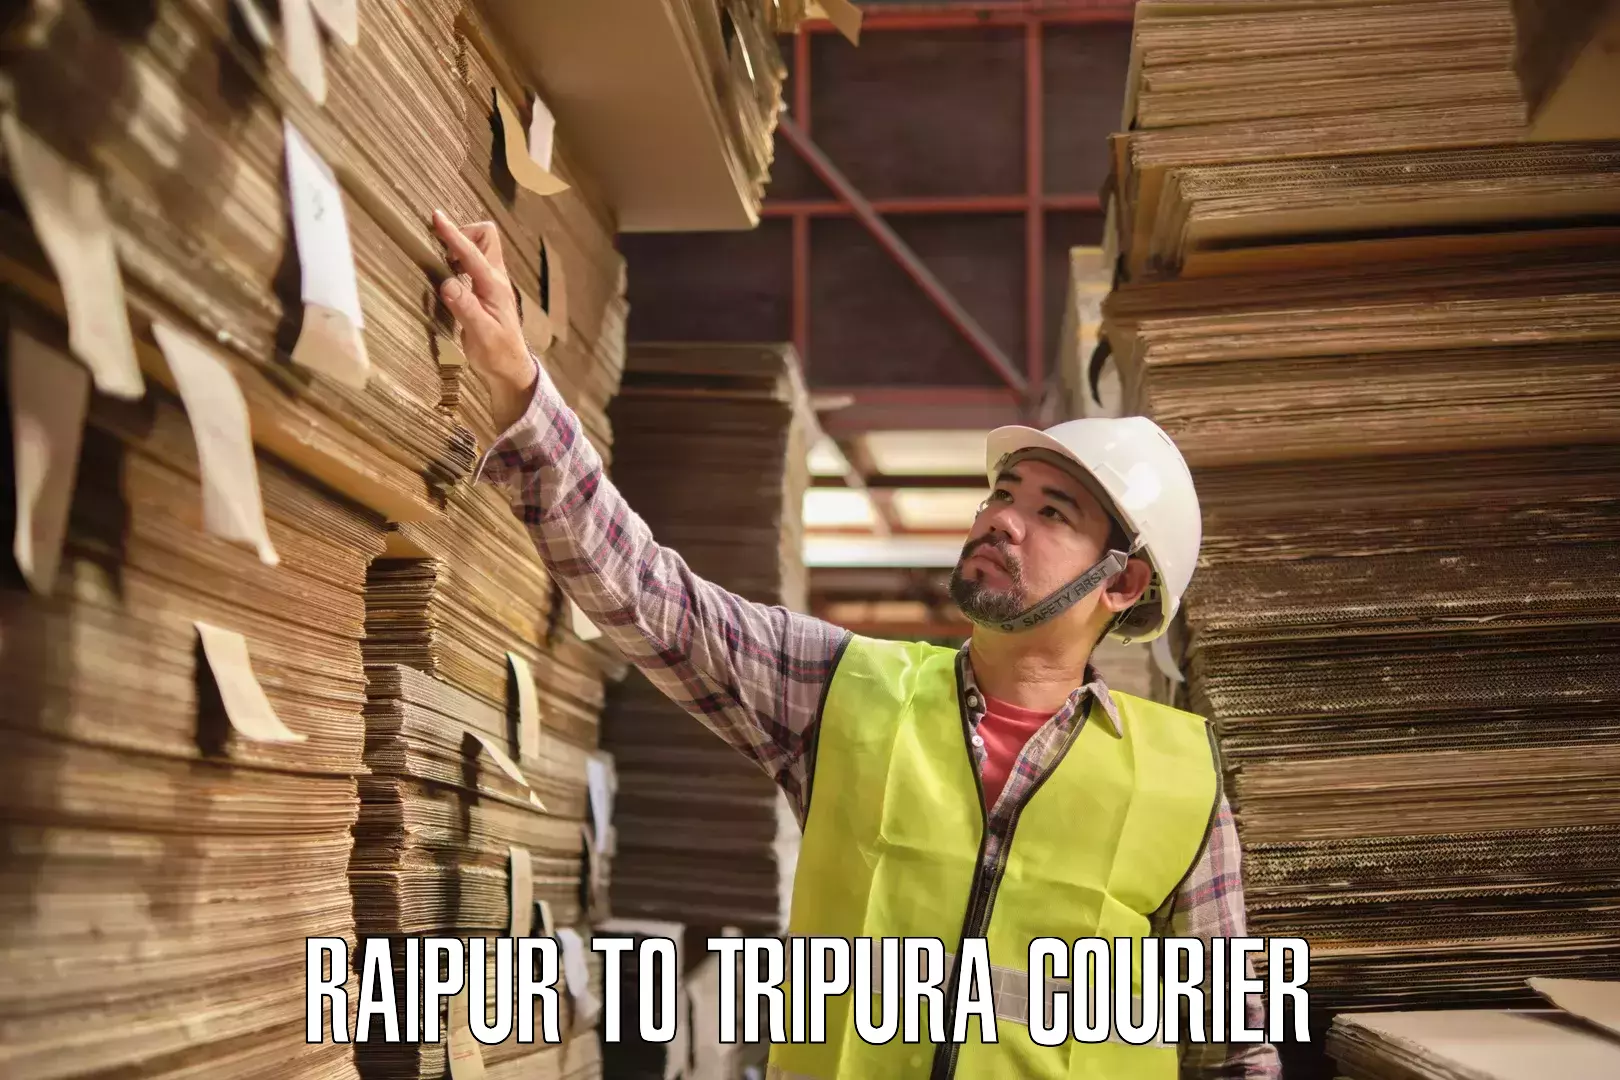 Logistics service provider Raipur to IIIT Agartala